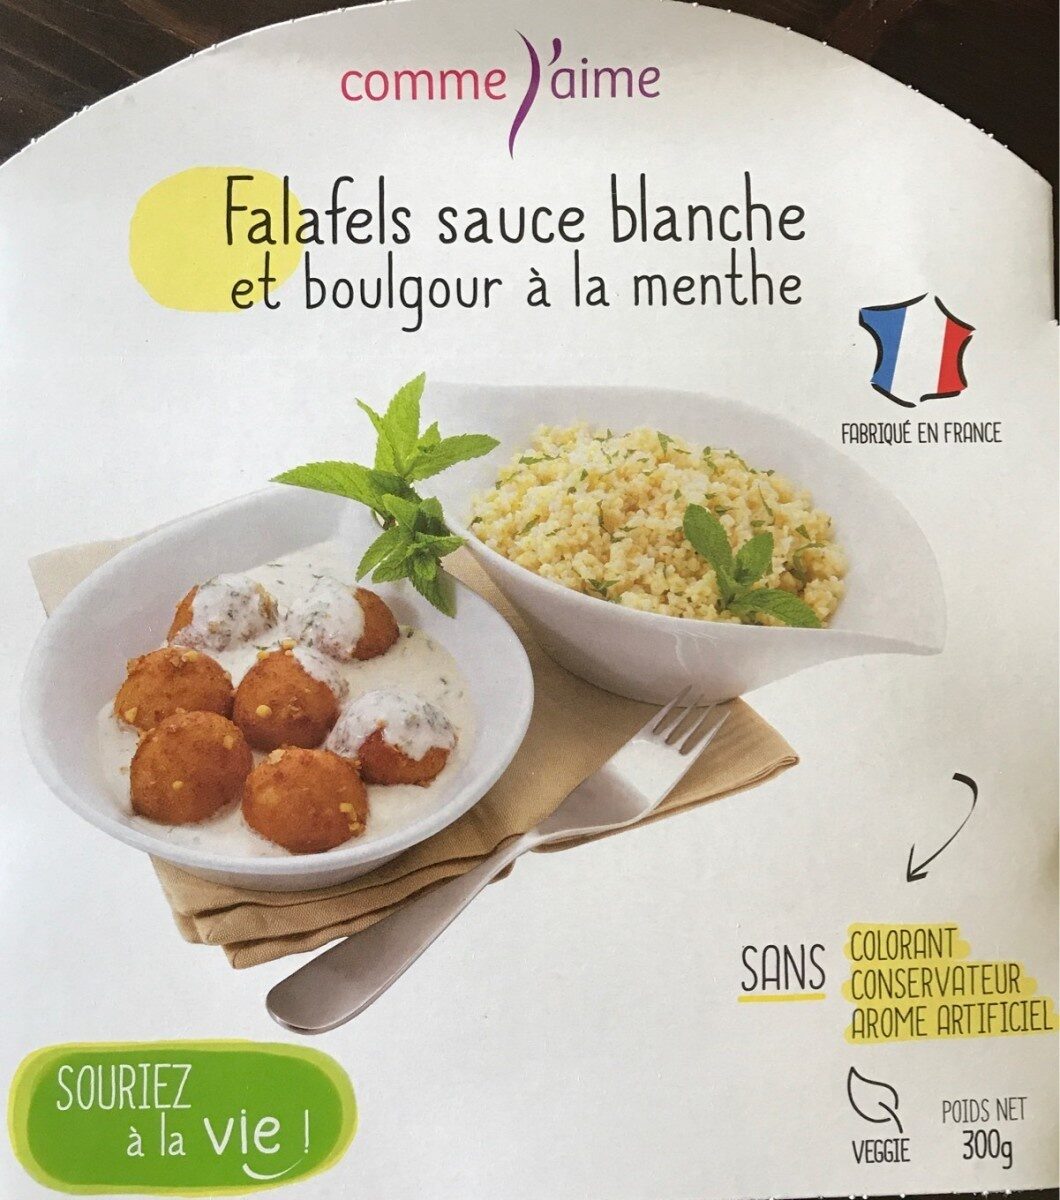 Falafels sauce blanche et boulgour à la menthe - Produkt - fr